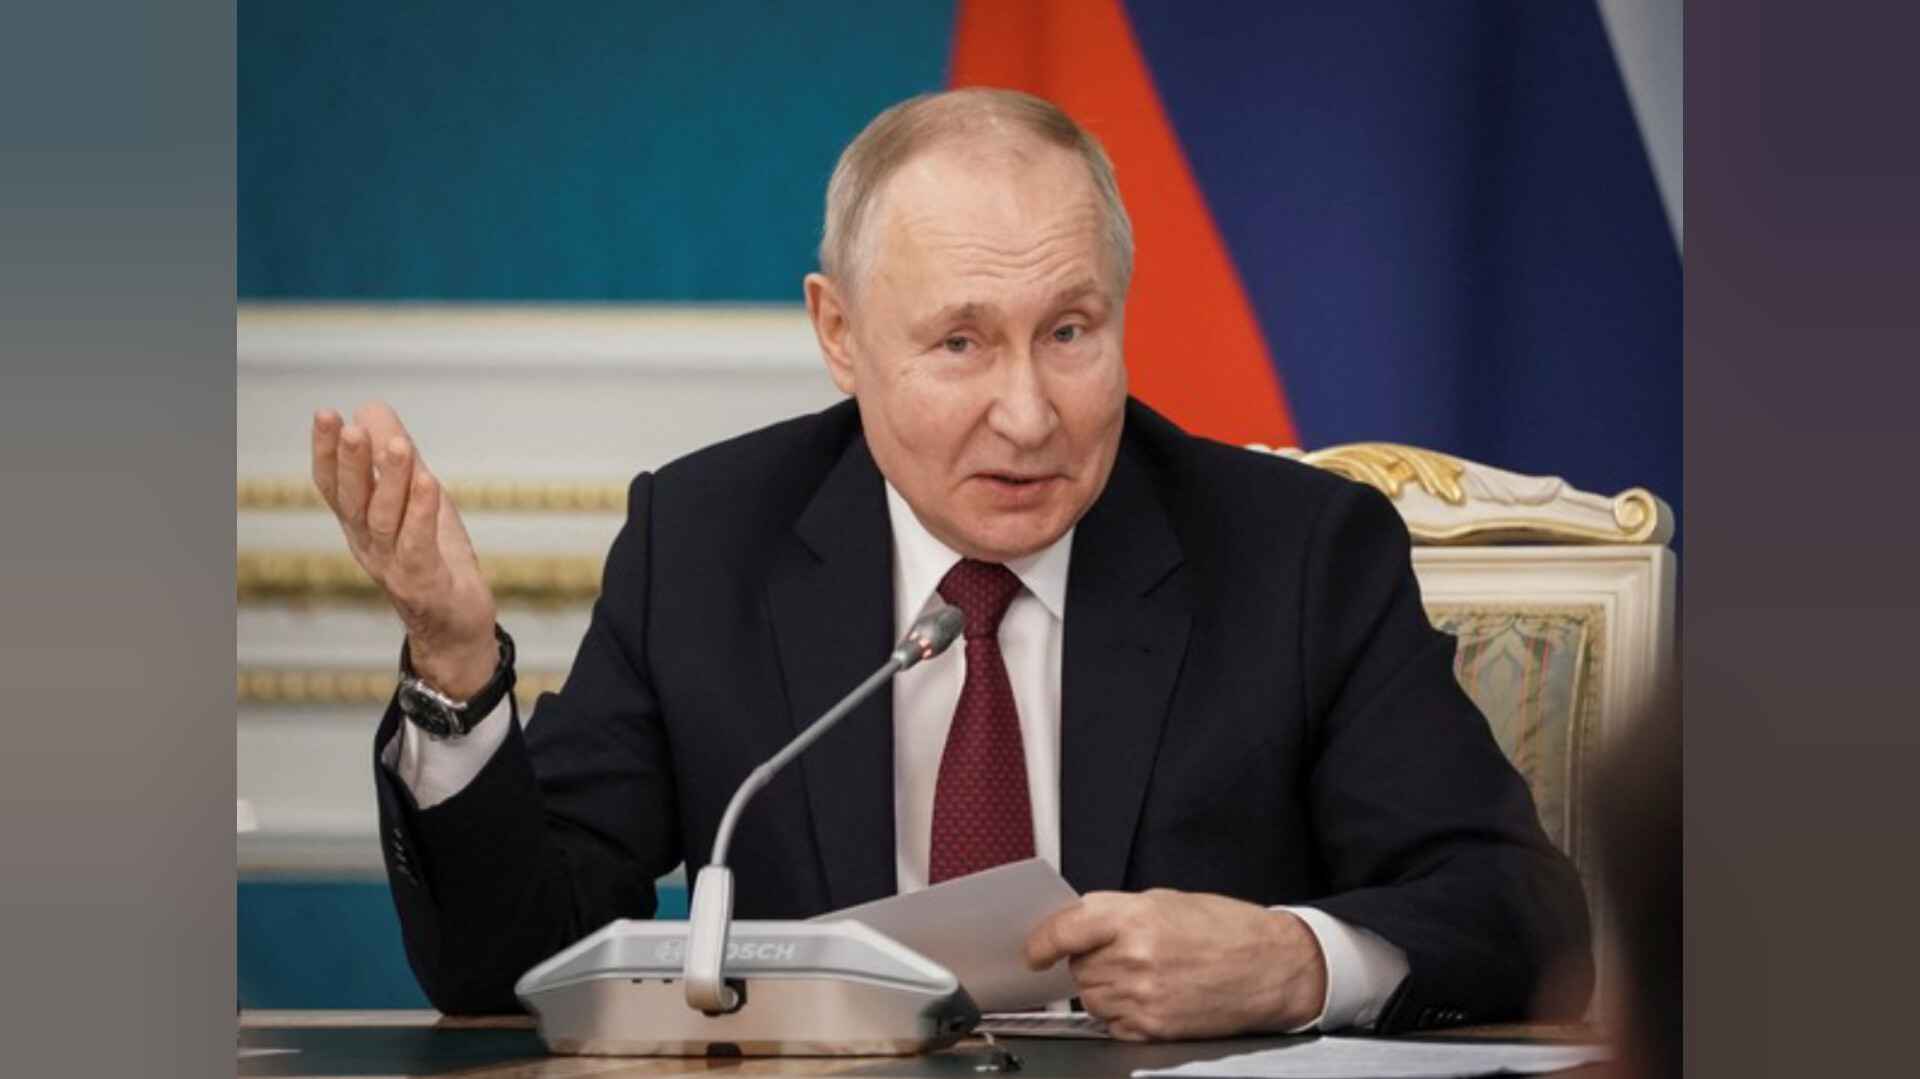 पुतिन ने जीता रूस के राष्ट्रपति पद का चुनाव, नए कार्यकाल के लिए प्राथमिकताएं बताईं